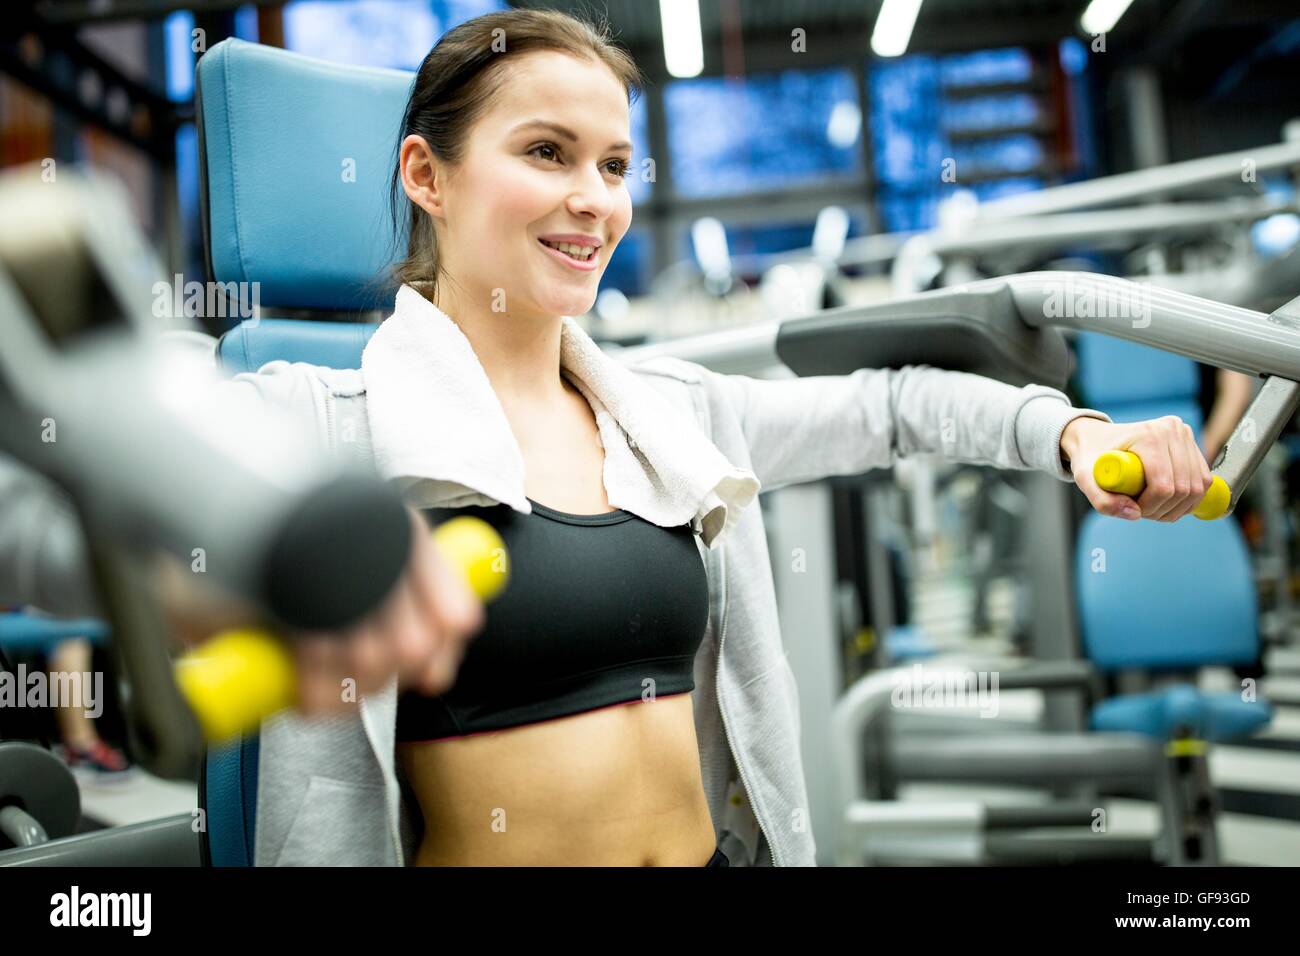 EIGENTUM FREIGEGEBEN. -MODELL VERÖFFENTLICHT. Junge Frau lächelnd und mit Ausübung Maschine in Fitness-Studio. Stockfoto